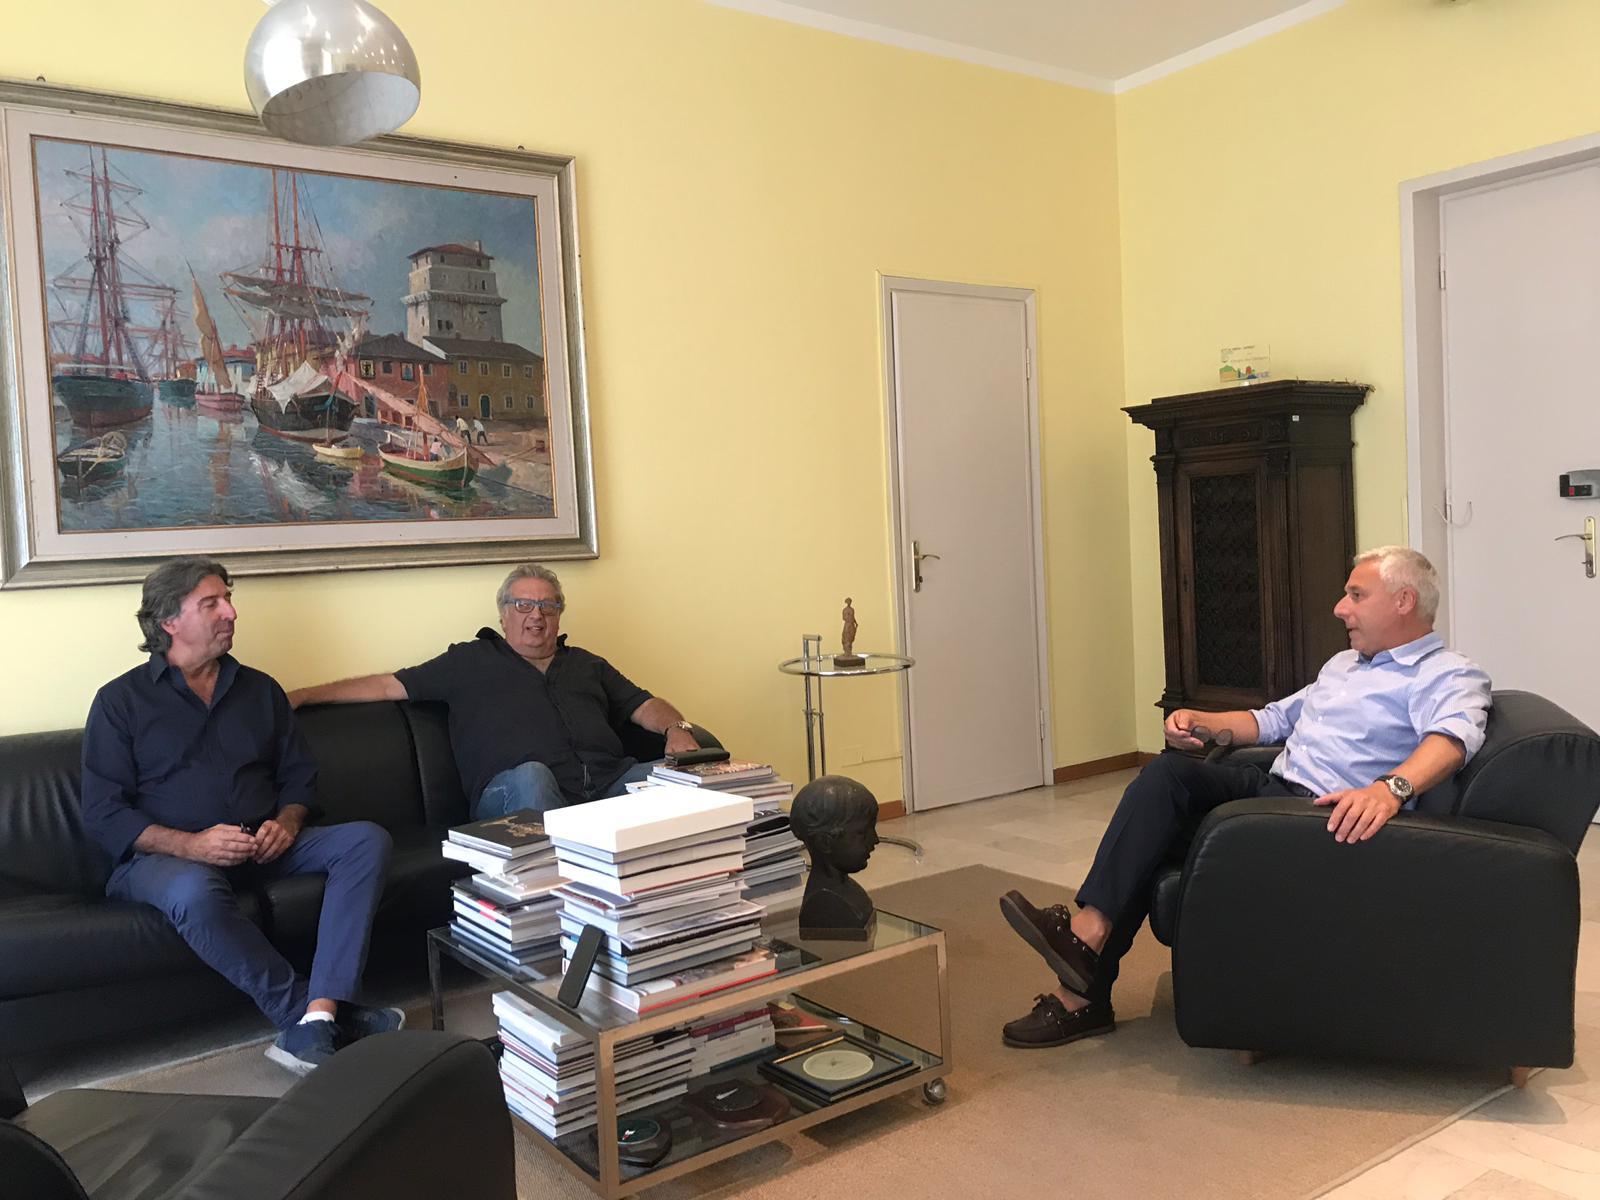 Il sindaco Del Ghingaro incontra i rappresentanti di Forza Italia